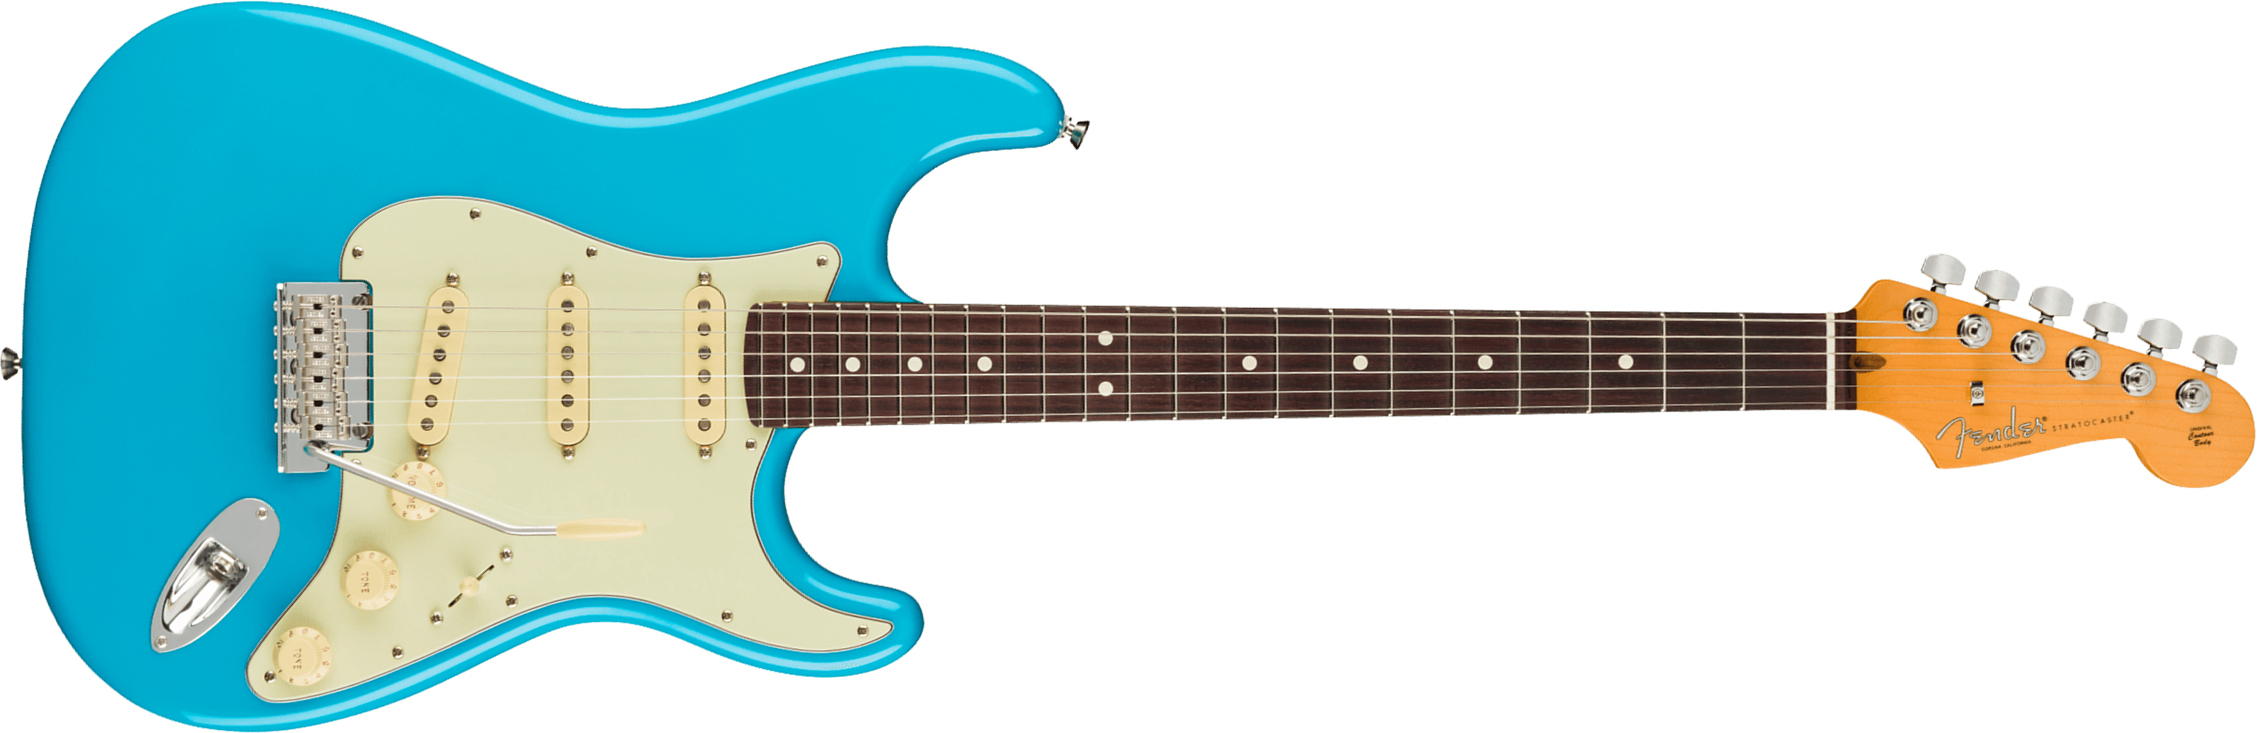 Fender Strat American Professional Ii Usa Rw - Miami Blue - E-Gitarre in Str-Form - Main picture